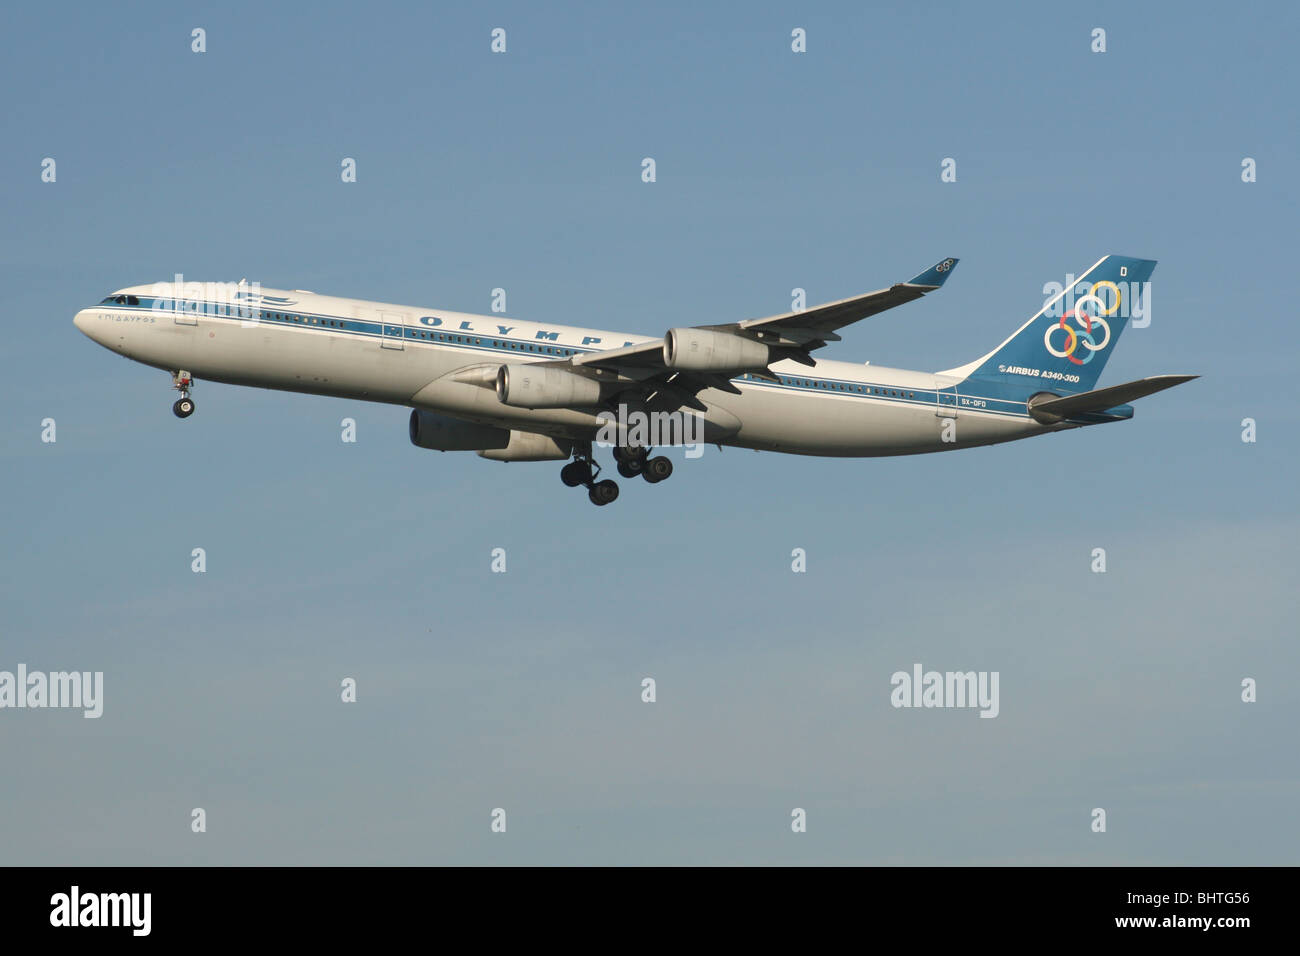 Olympic airlines immagini e fotografie stock ad alta risoluzione - Alamy